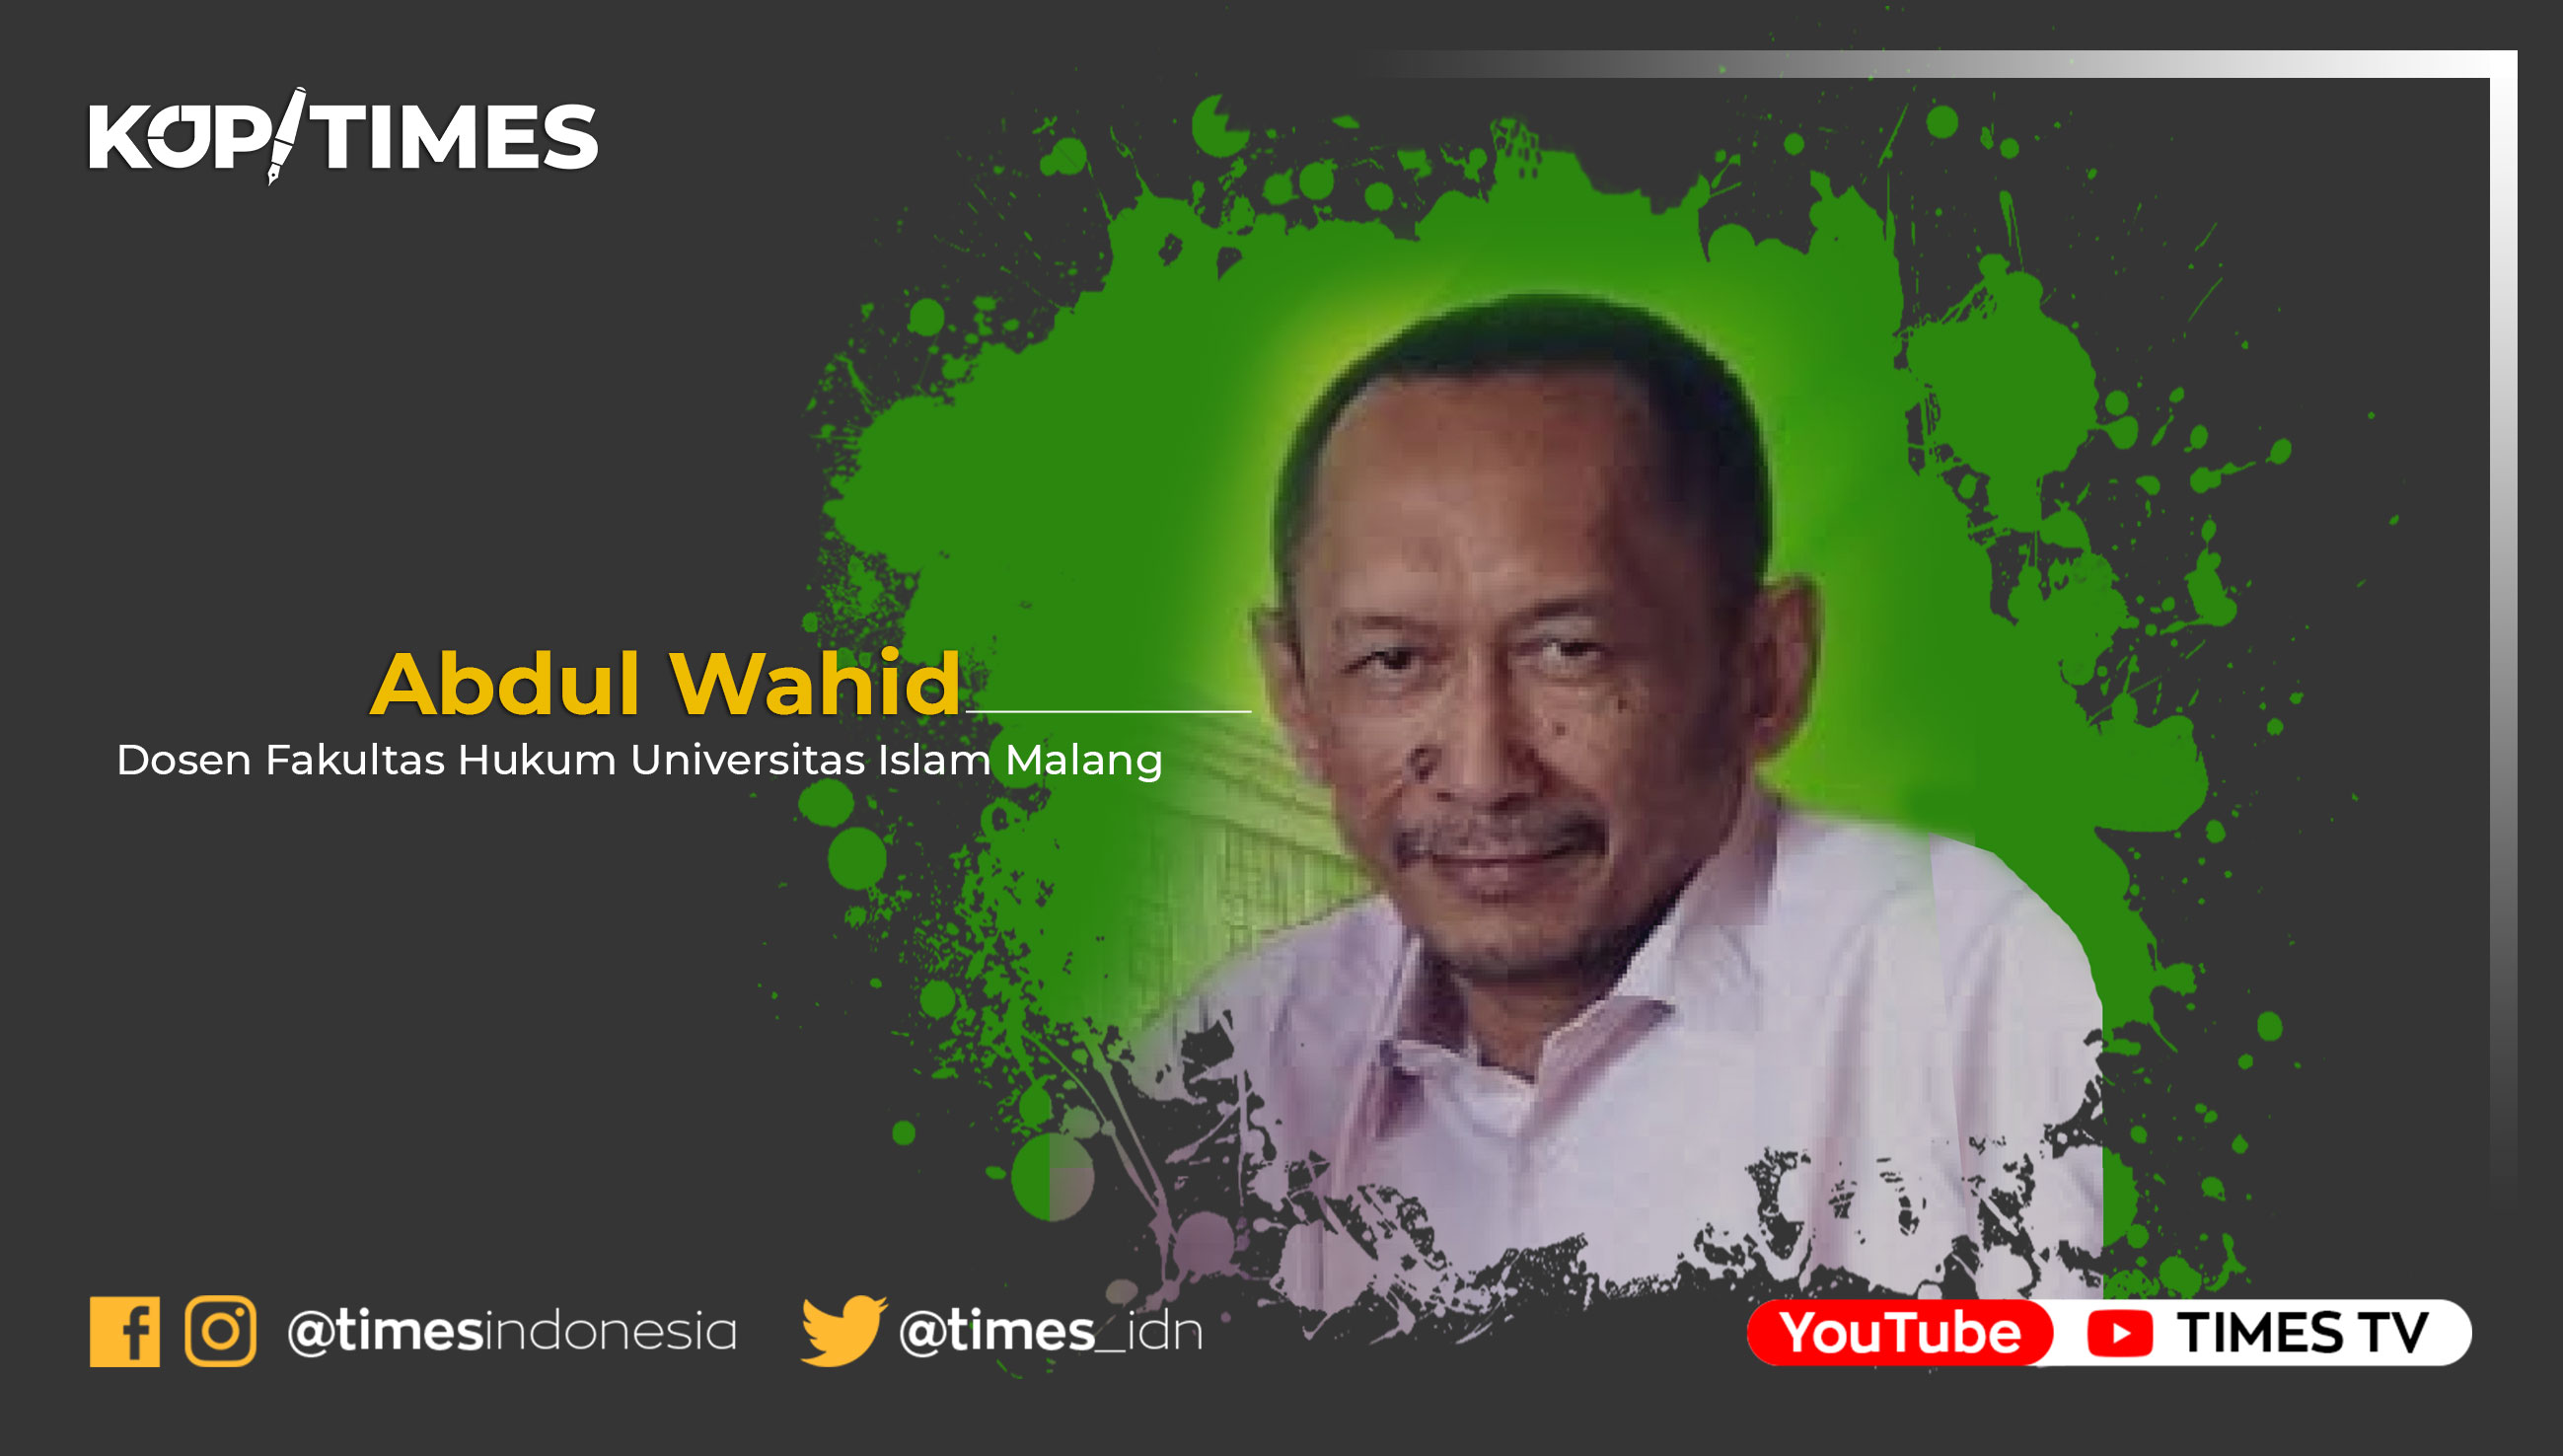 bdul Wahid, Dosen Fakultas Hukum (FH) Universitas Islam Malang (UNISMA) dan penulis buku hukum dan agama.